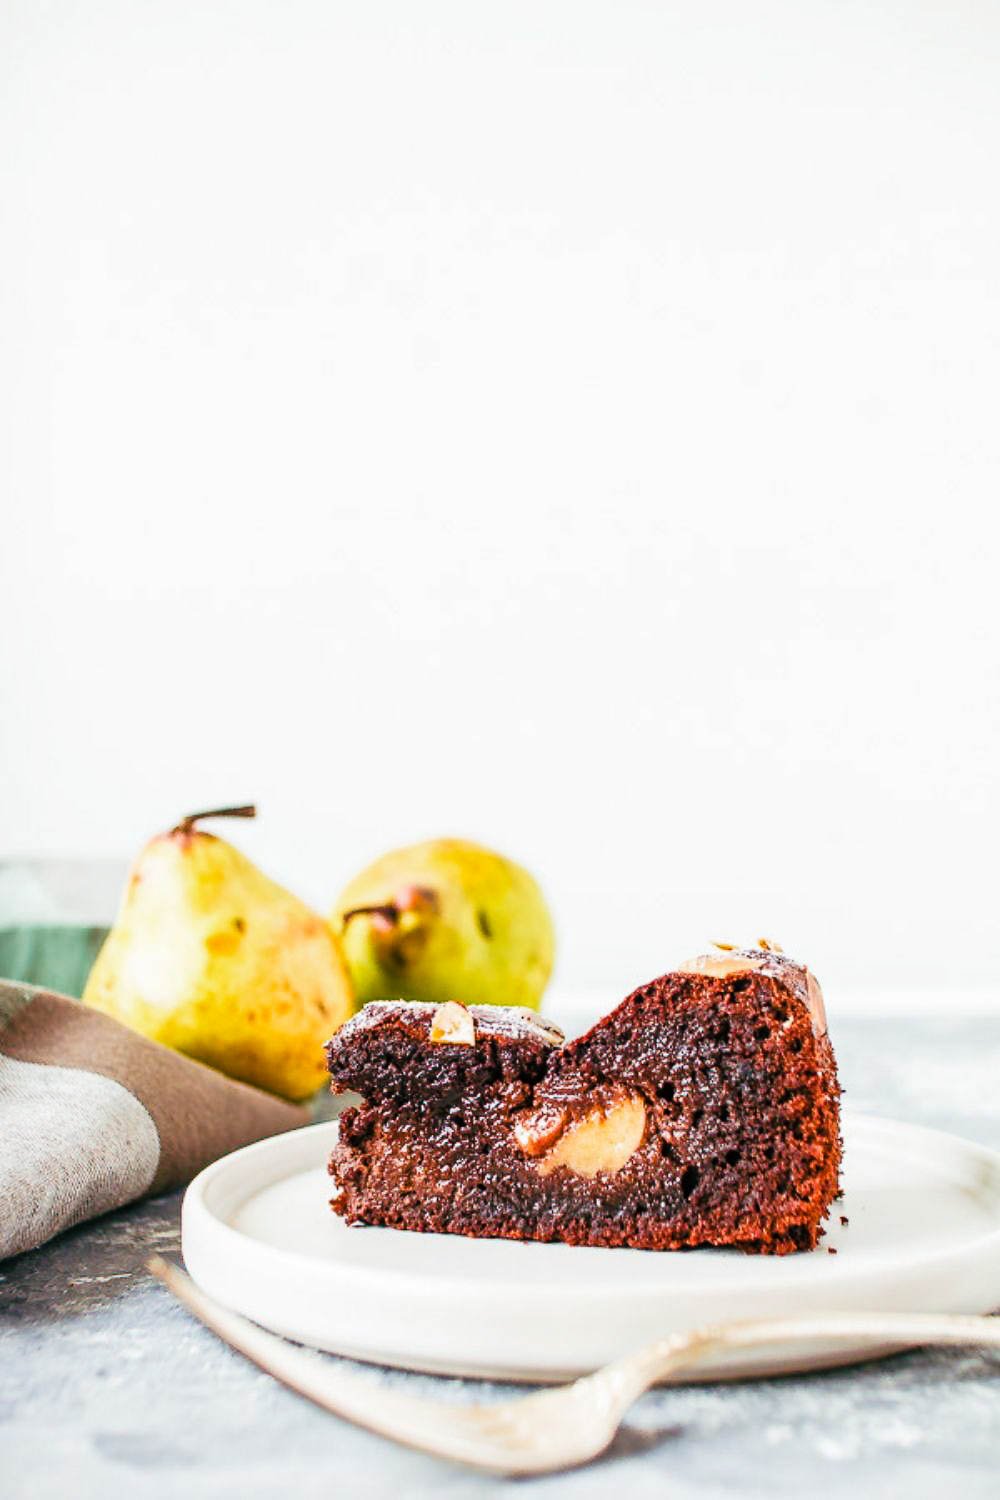 洋梨とオリーブオイルのチョコレートケーキ